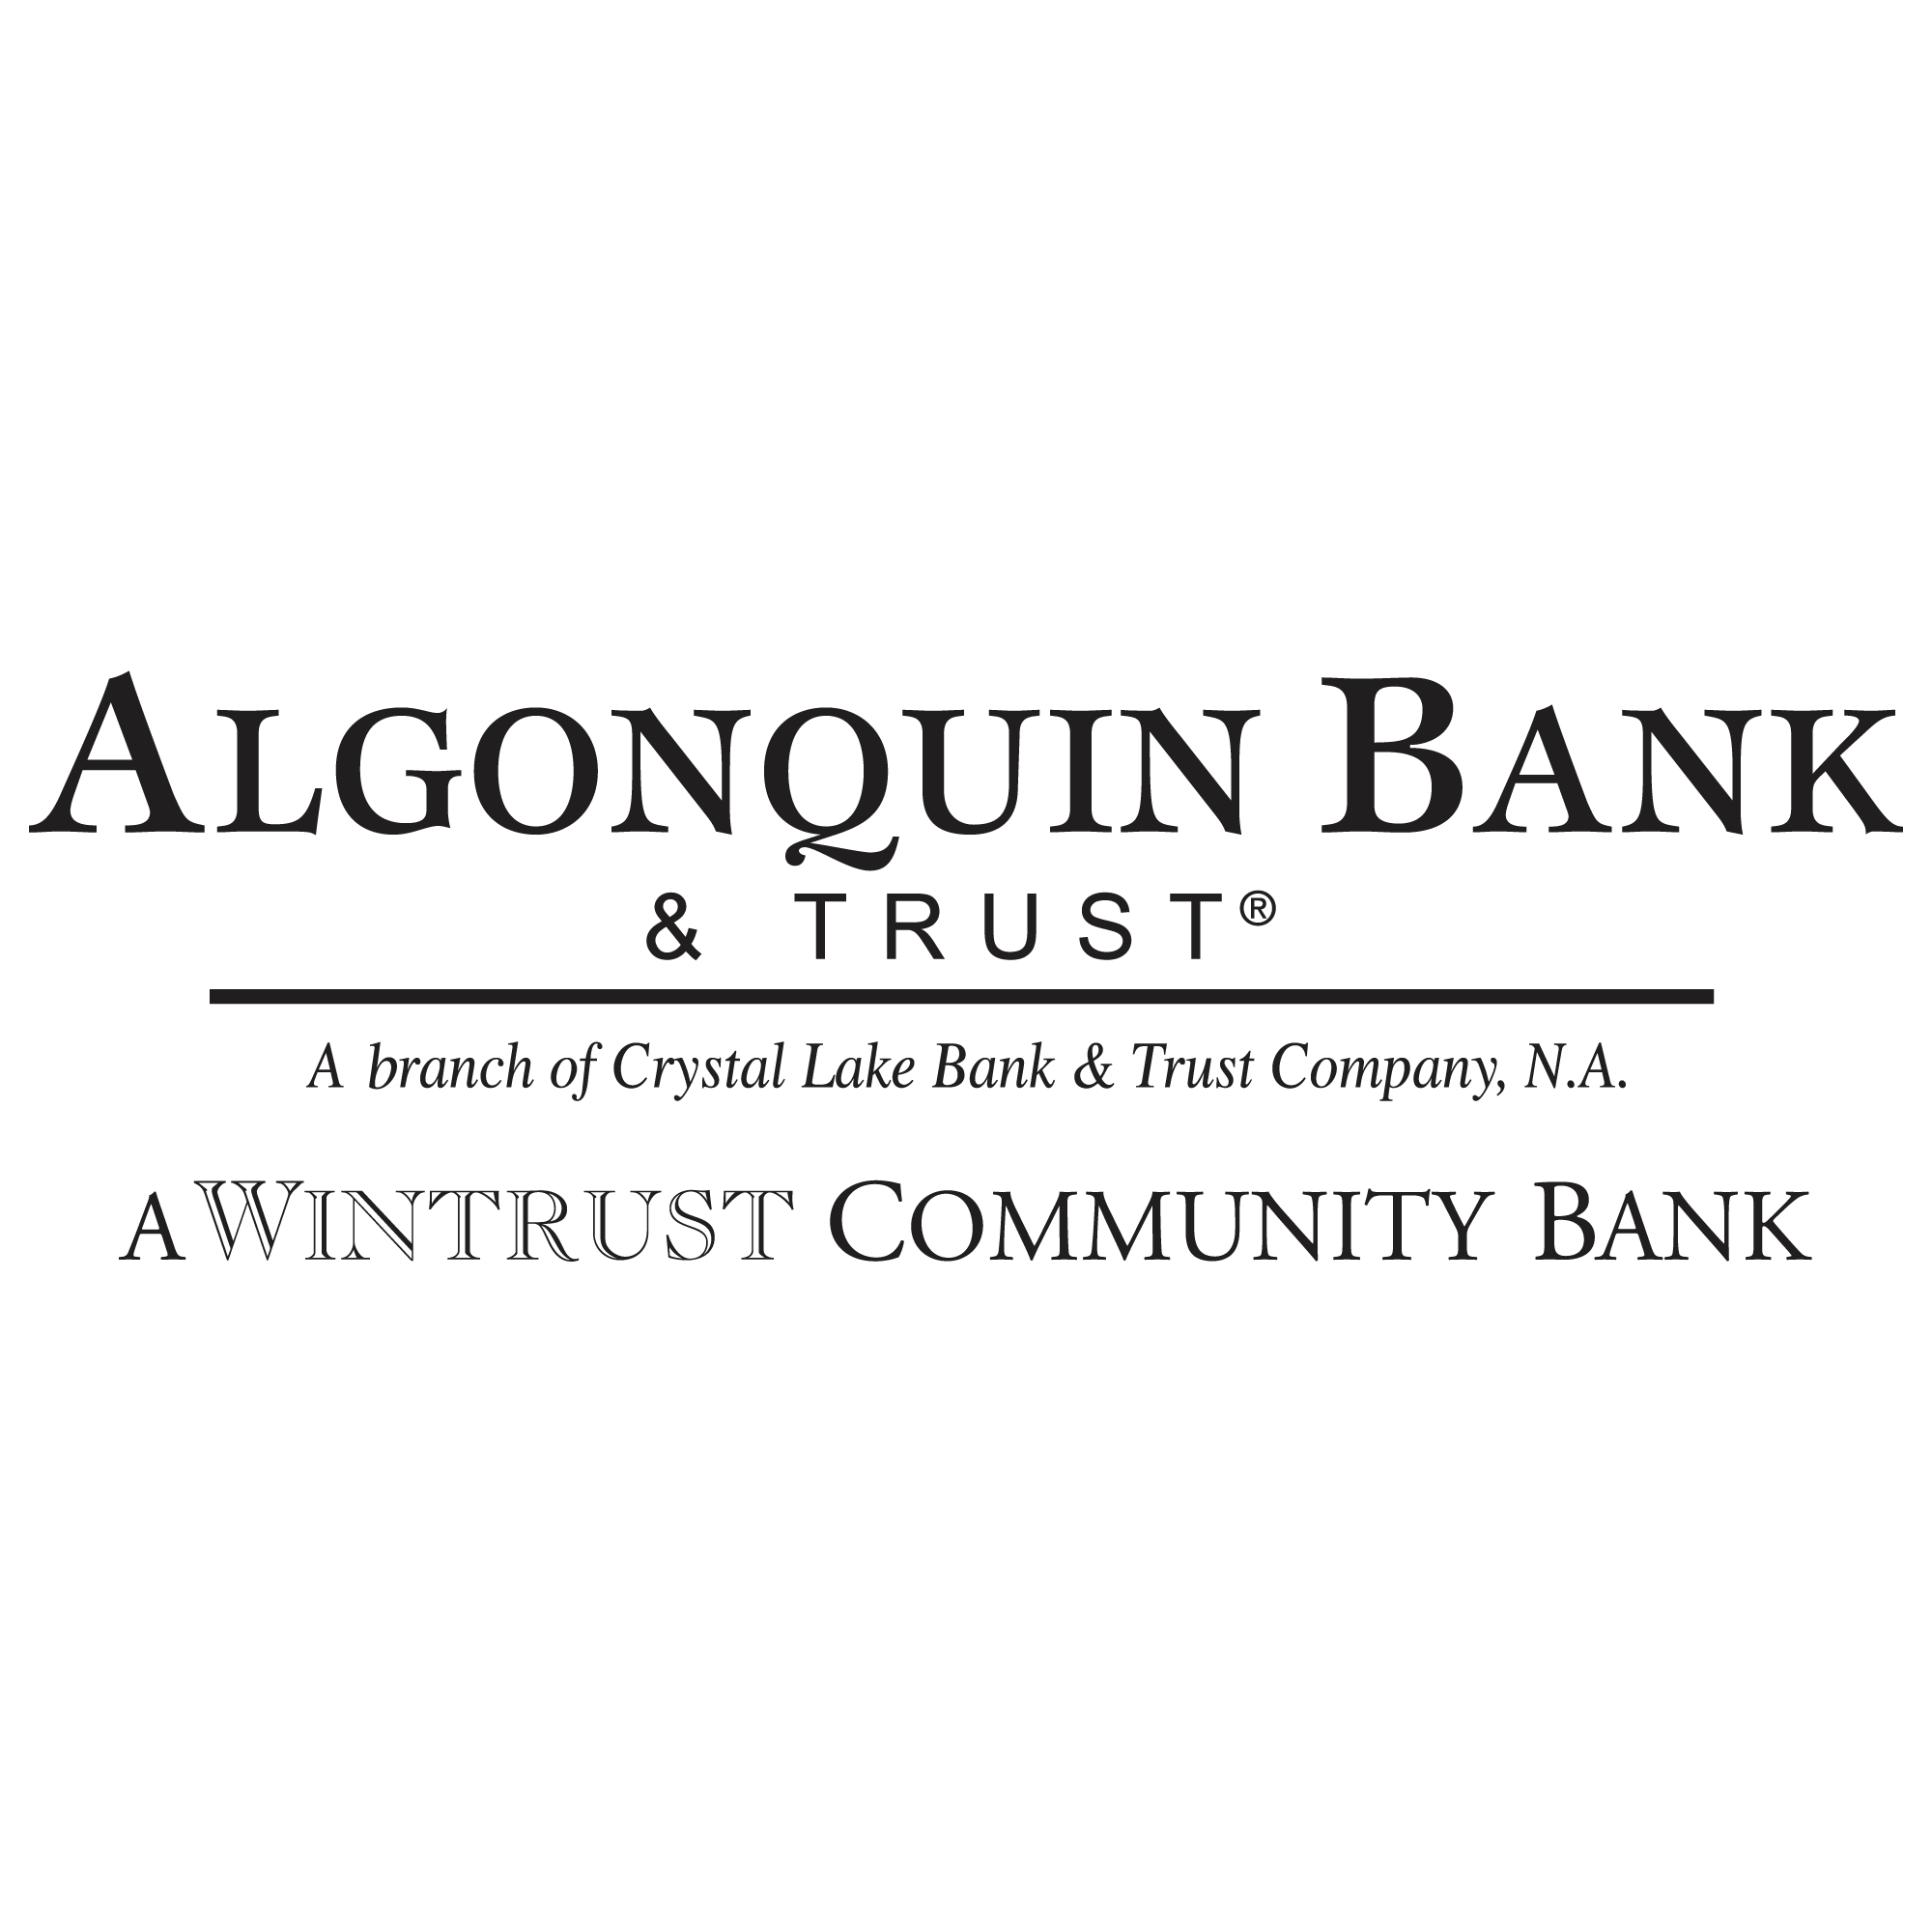 Algonquin Bank & Trust